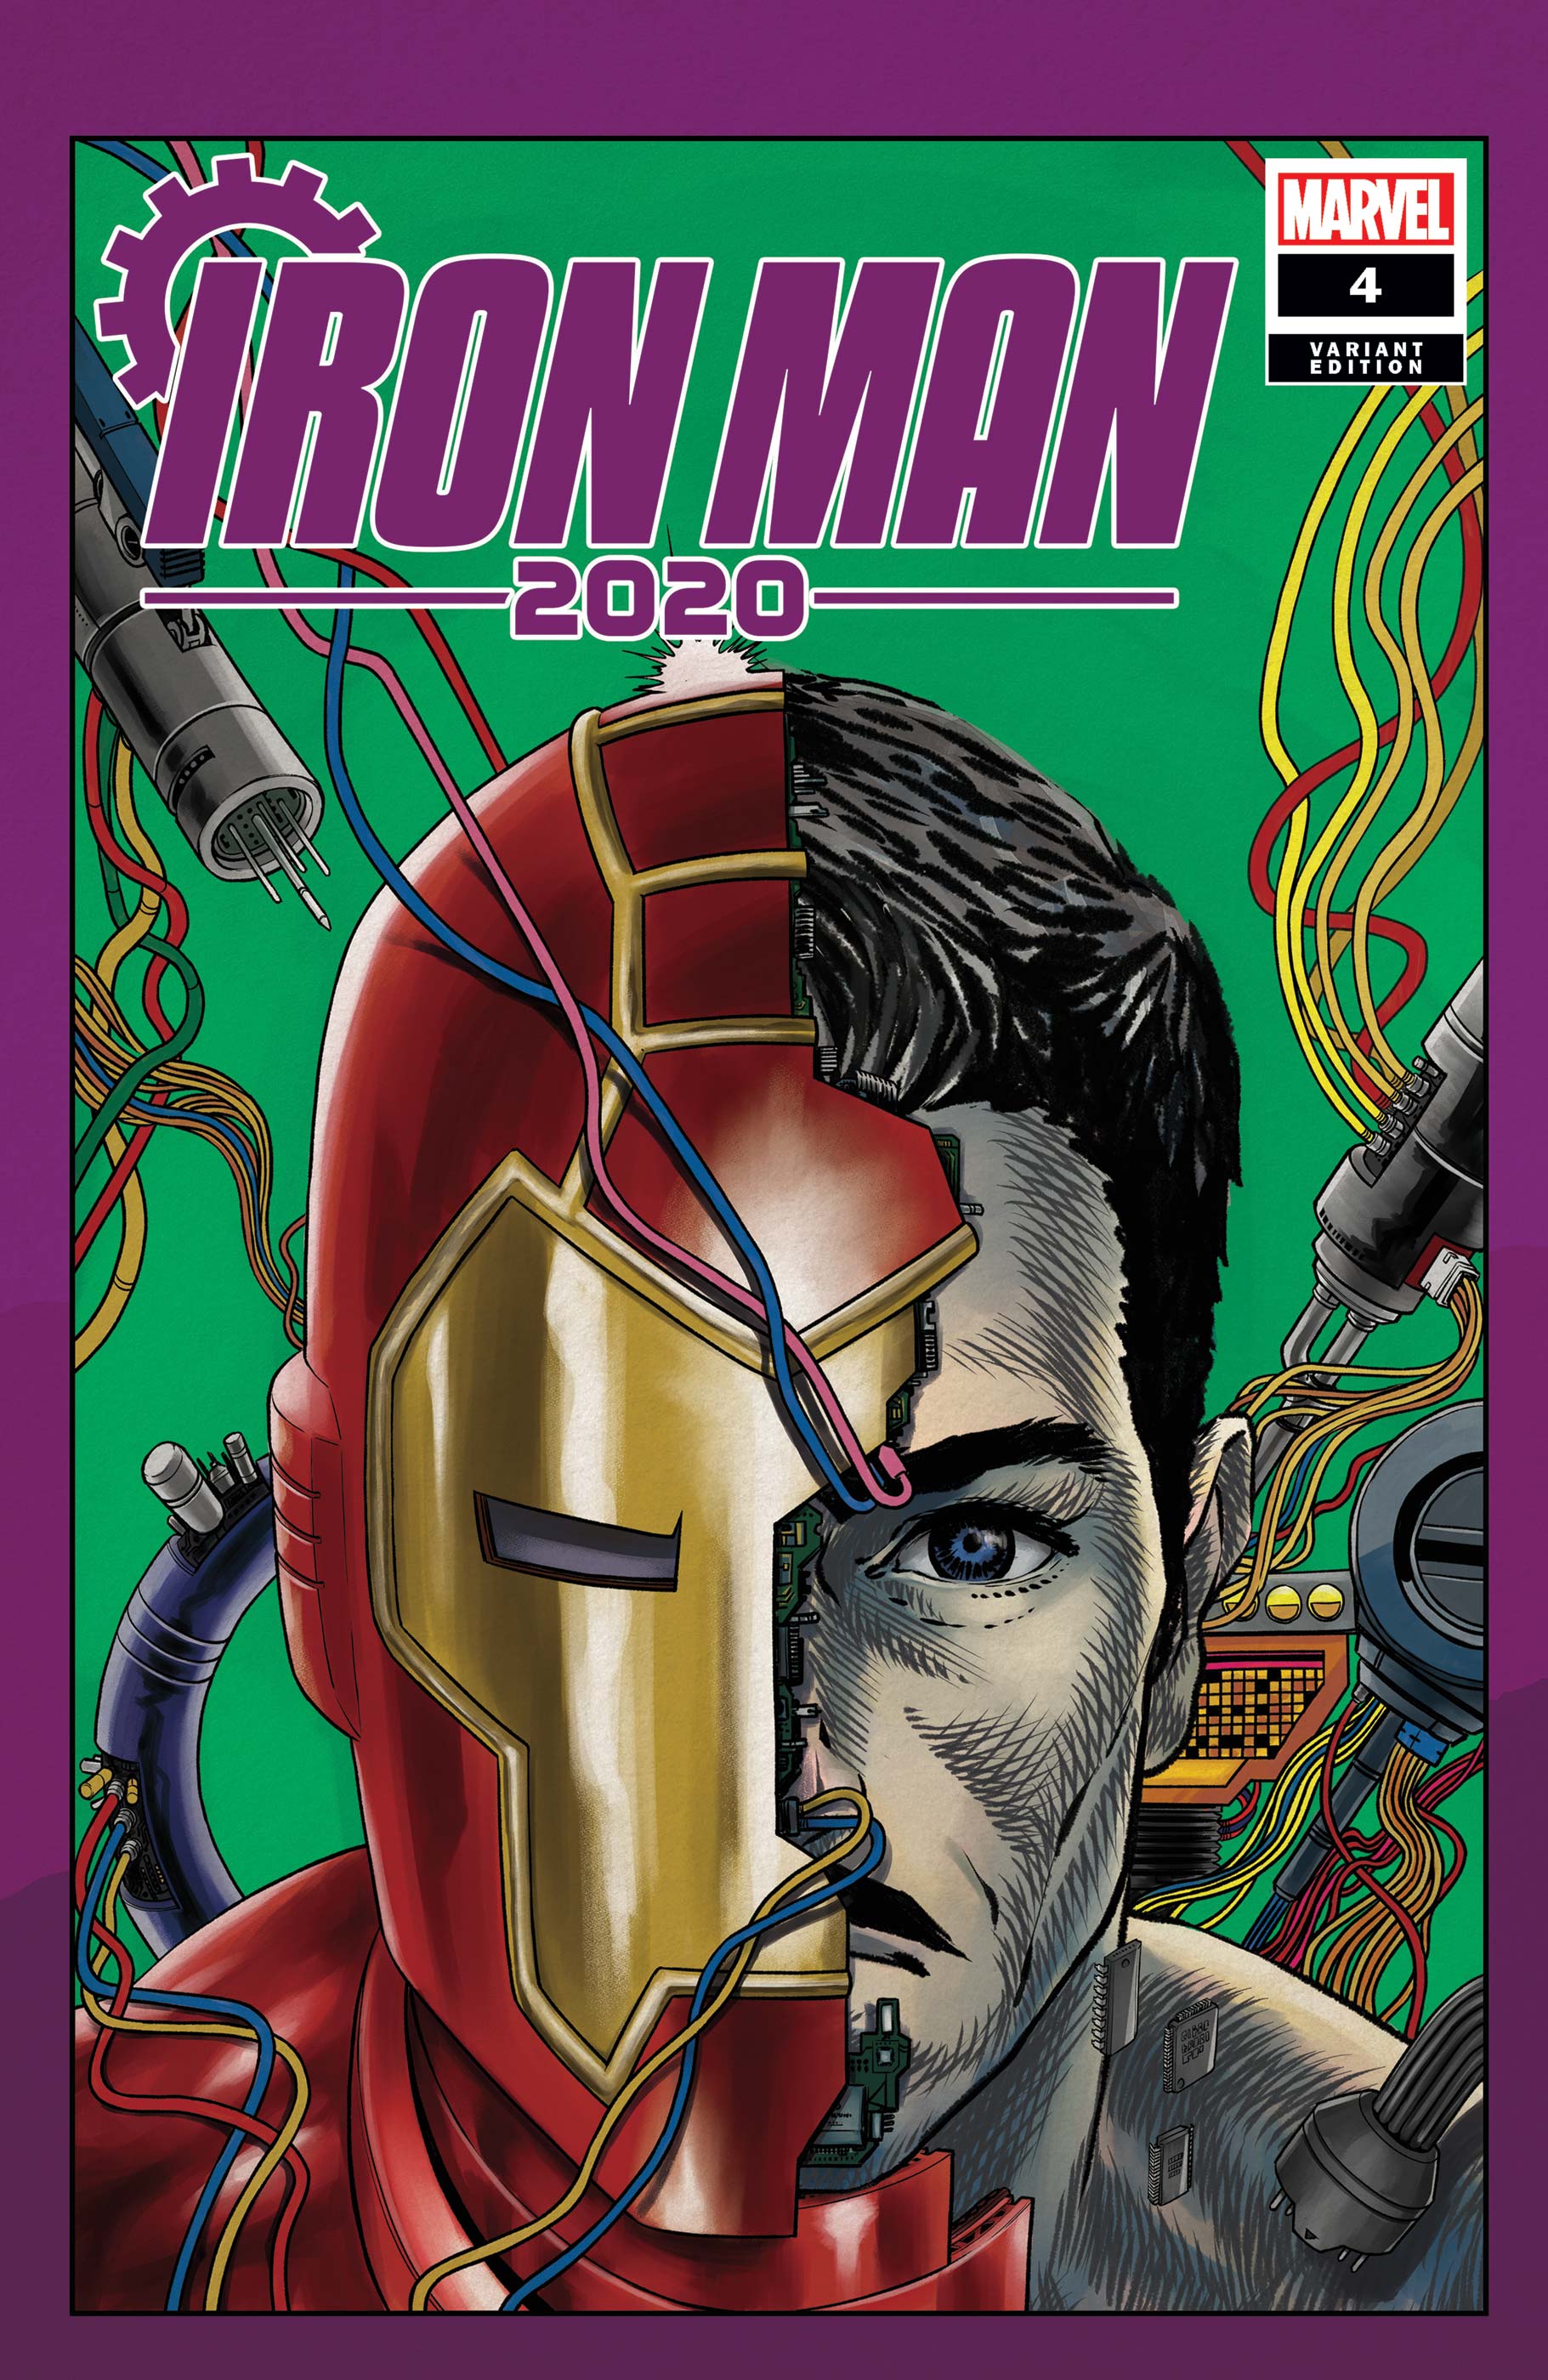 Iron Man 2020 (2020) #4 (Variant)